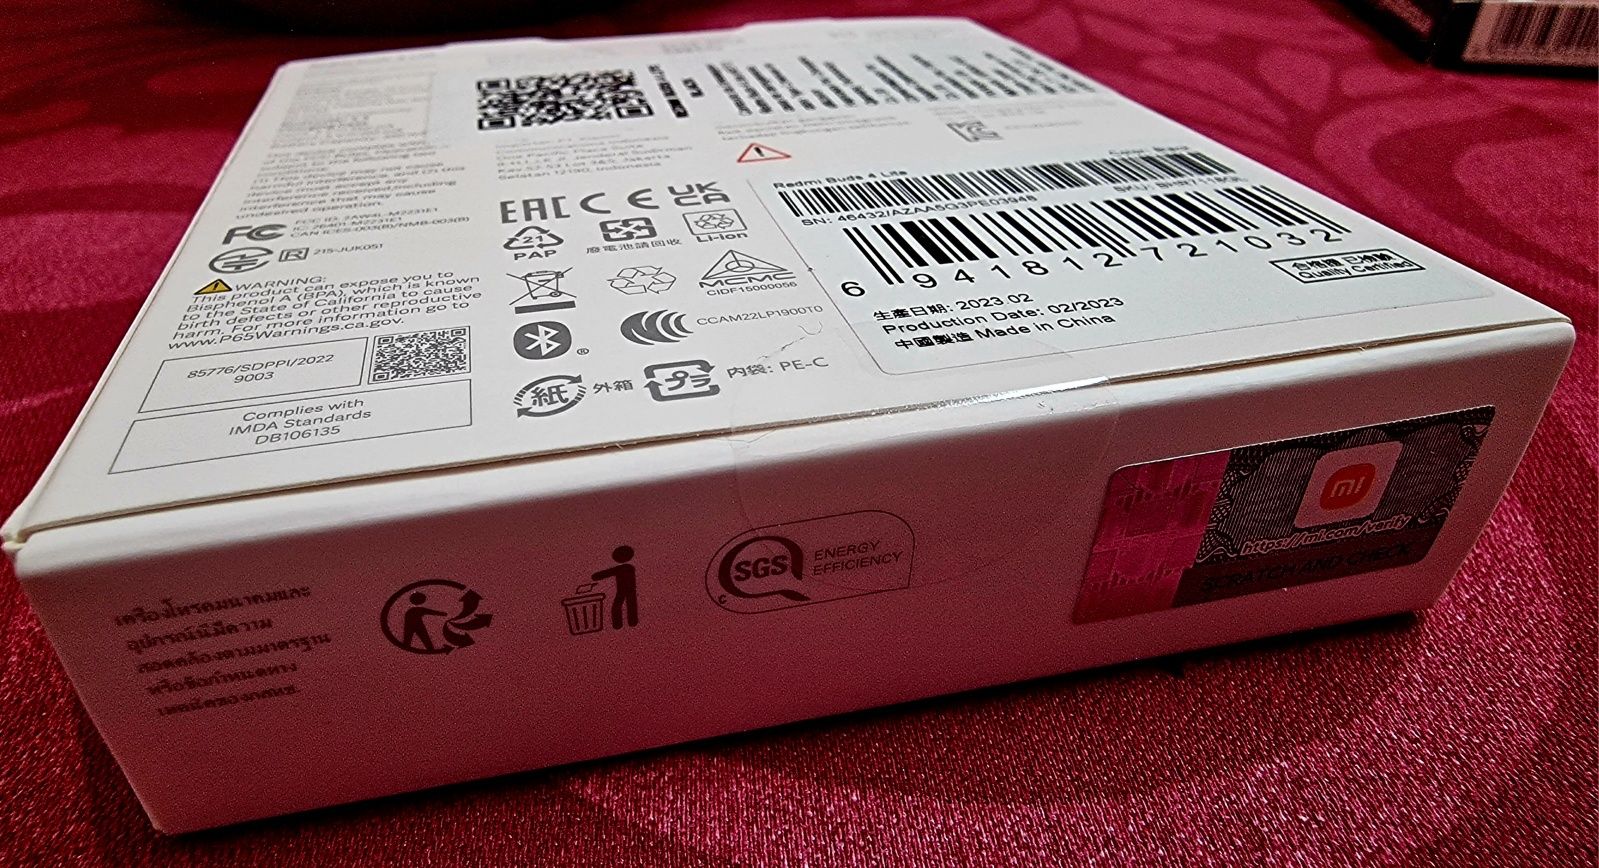 Xiaomi Redmi Buds 4 Lite